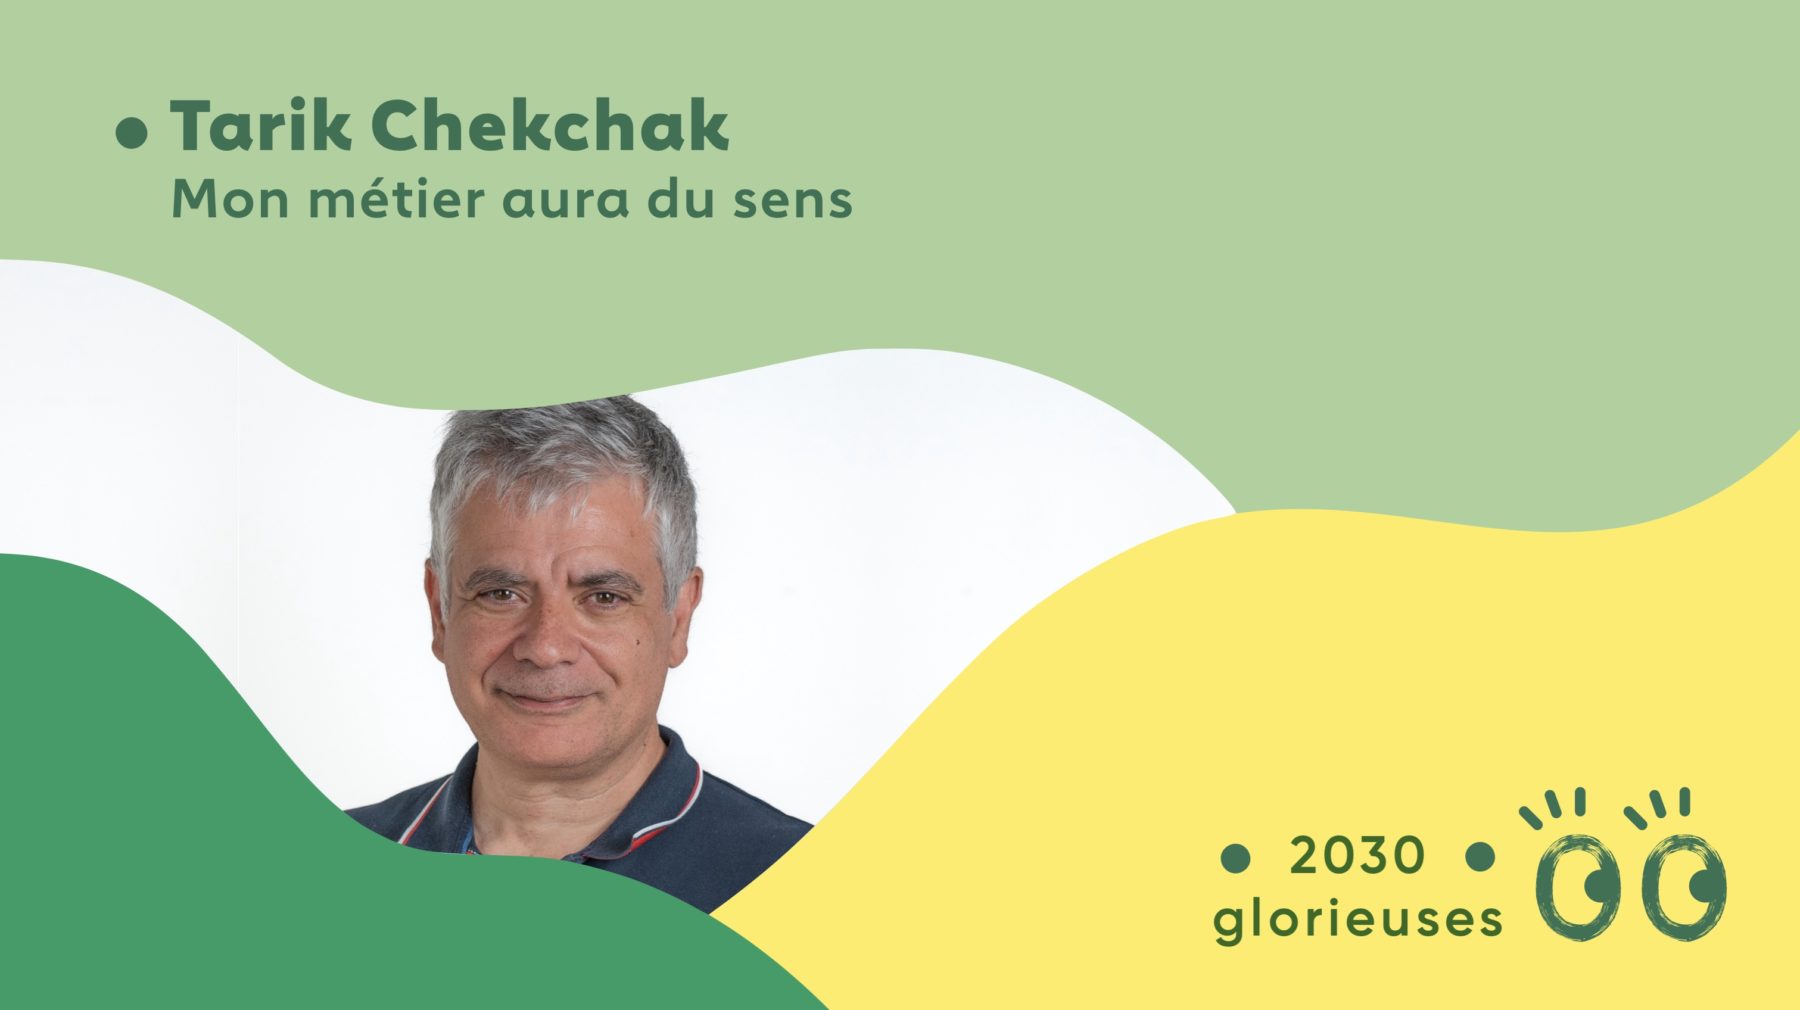 2030 Glorieuses #82 : Tarik Chekchak : “Le biomimétisme est très intéressant pour accélérer notre transition souhaitable."